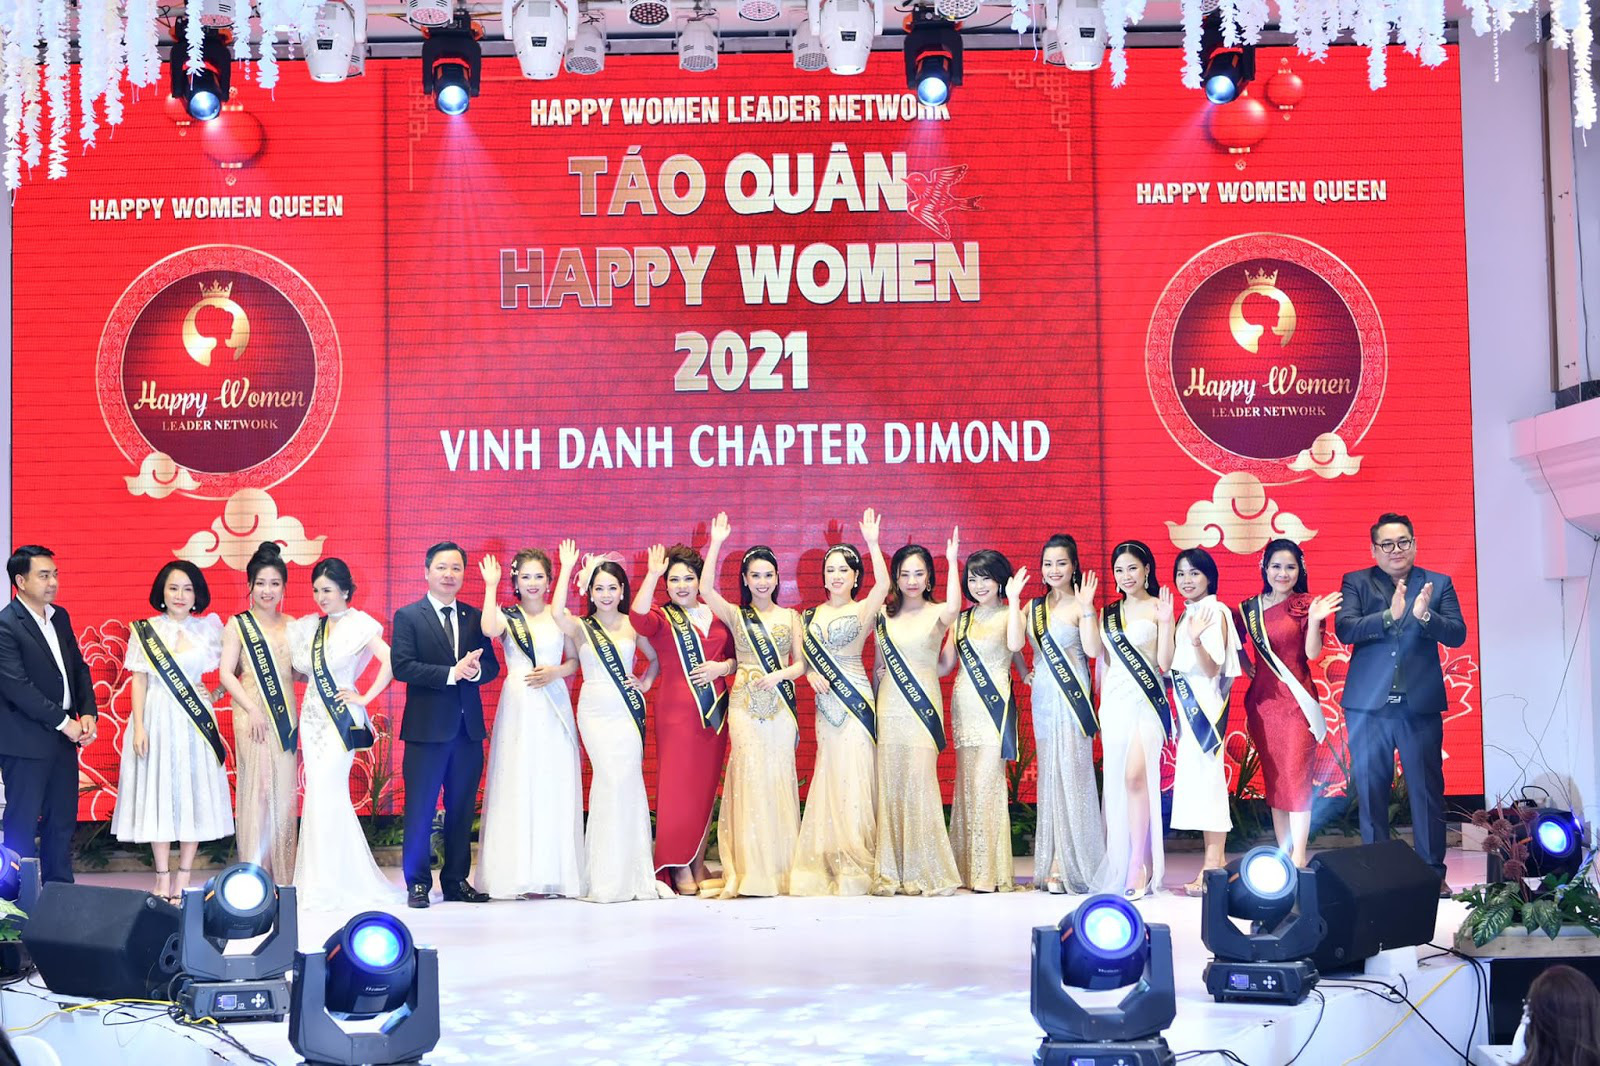 Chân dung Bùi Thanh Hương - Chủ tịch Happy Women - Trưởng ban tổ chức Táo quân 2021 - Ảnh 1.